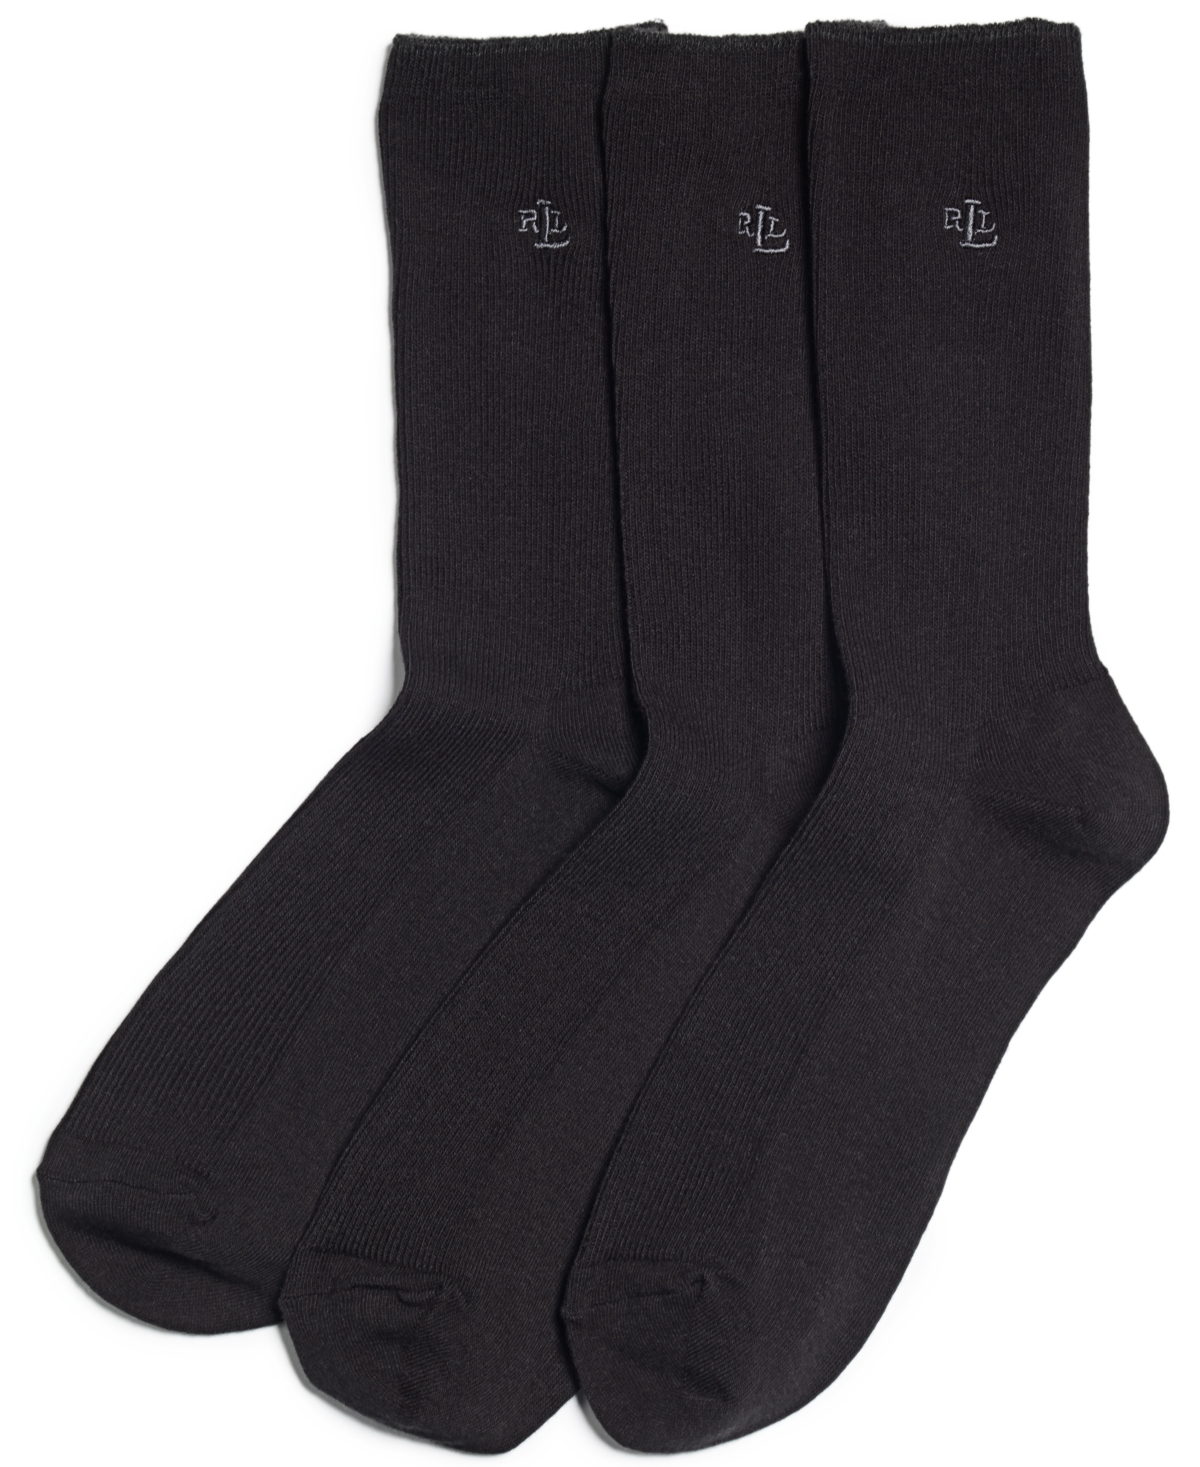 Women's Ribbed Cotton Trouser 3 Pack Socks - Dark Brown